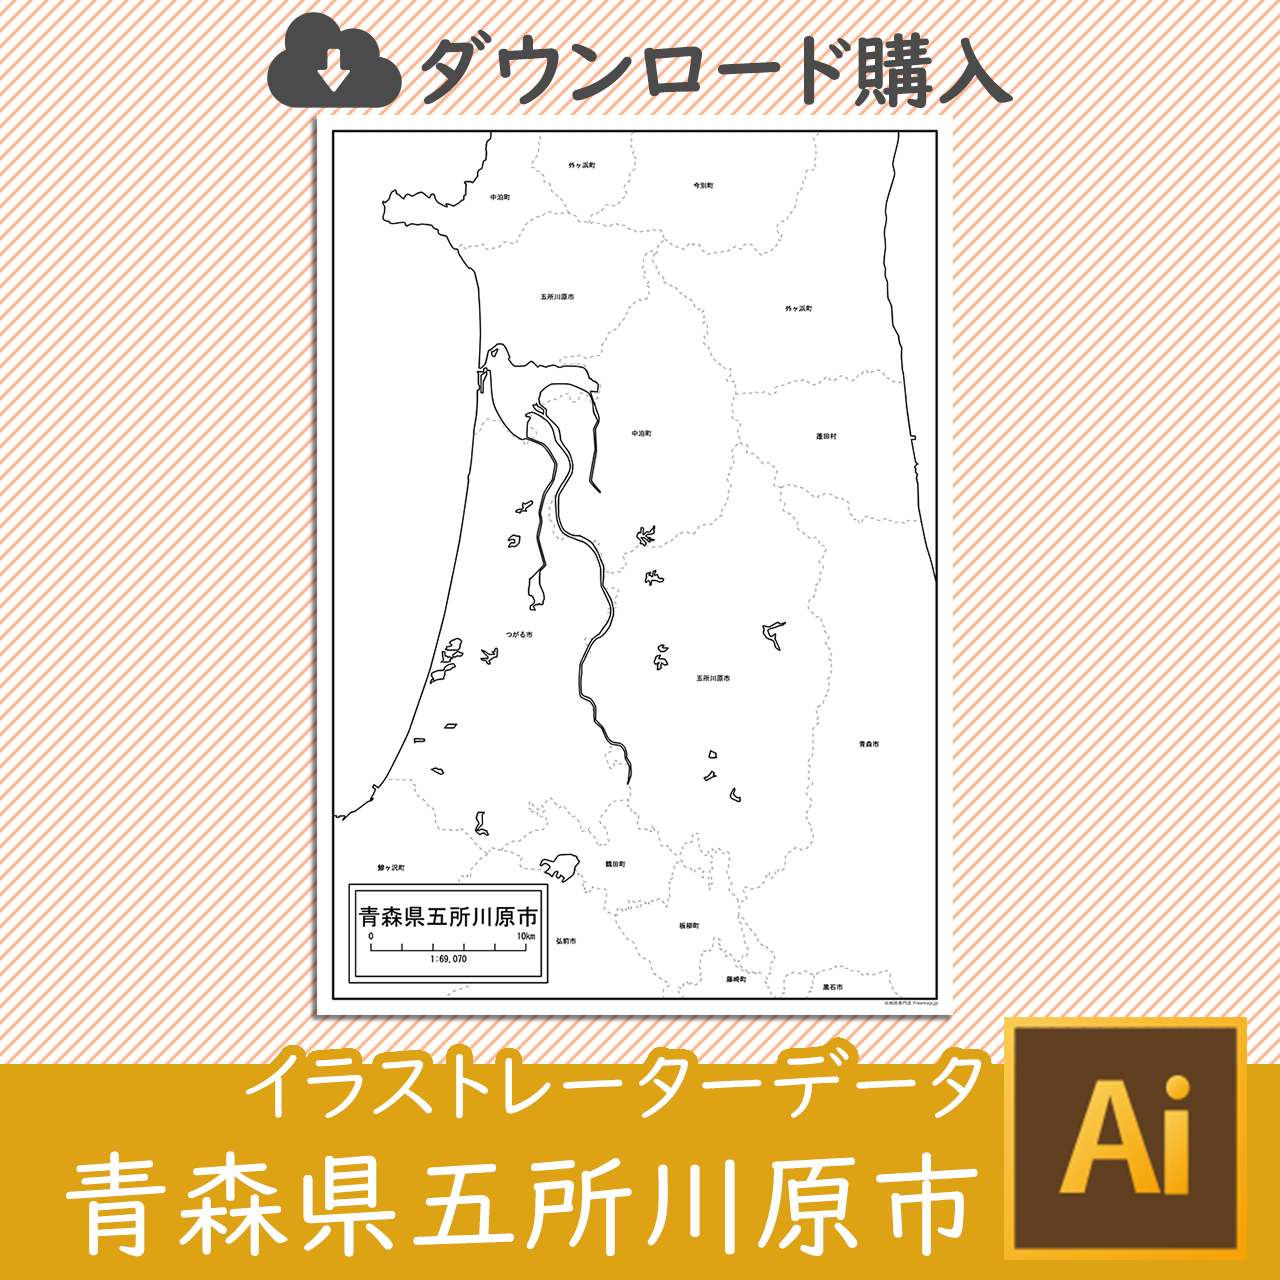 五所川原市のaiデータのサムネイル画像